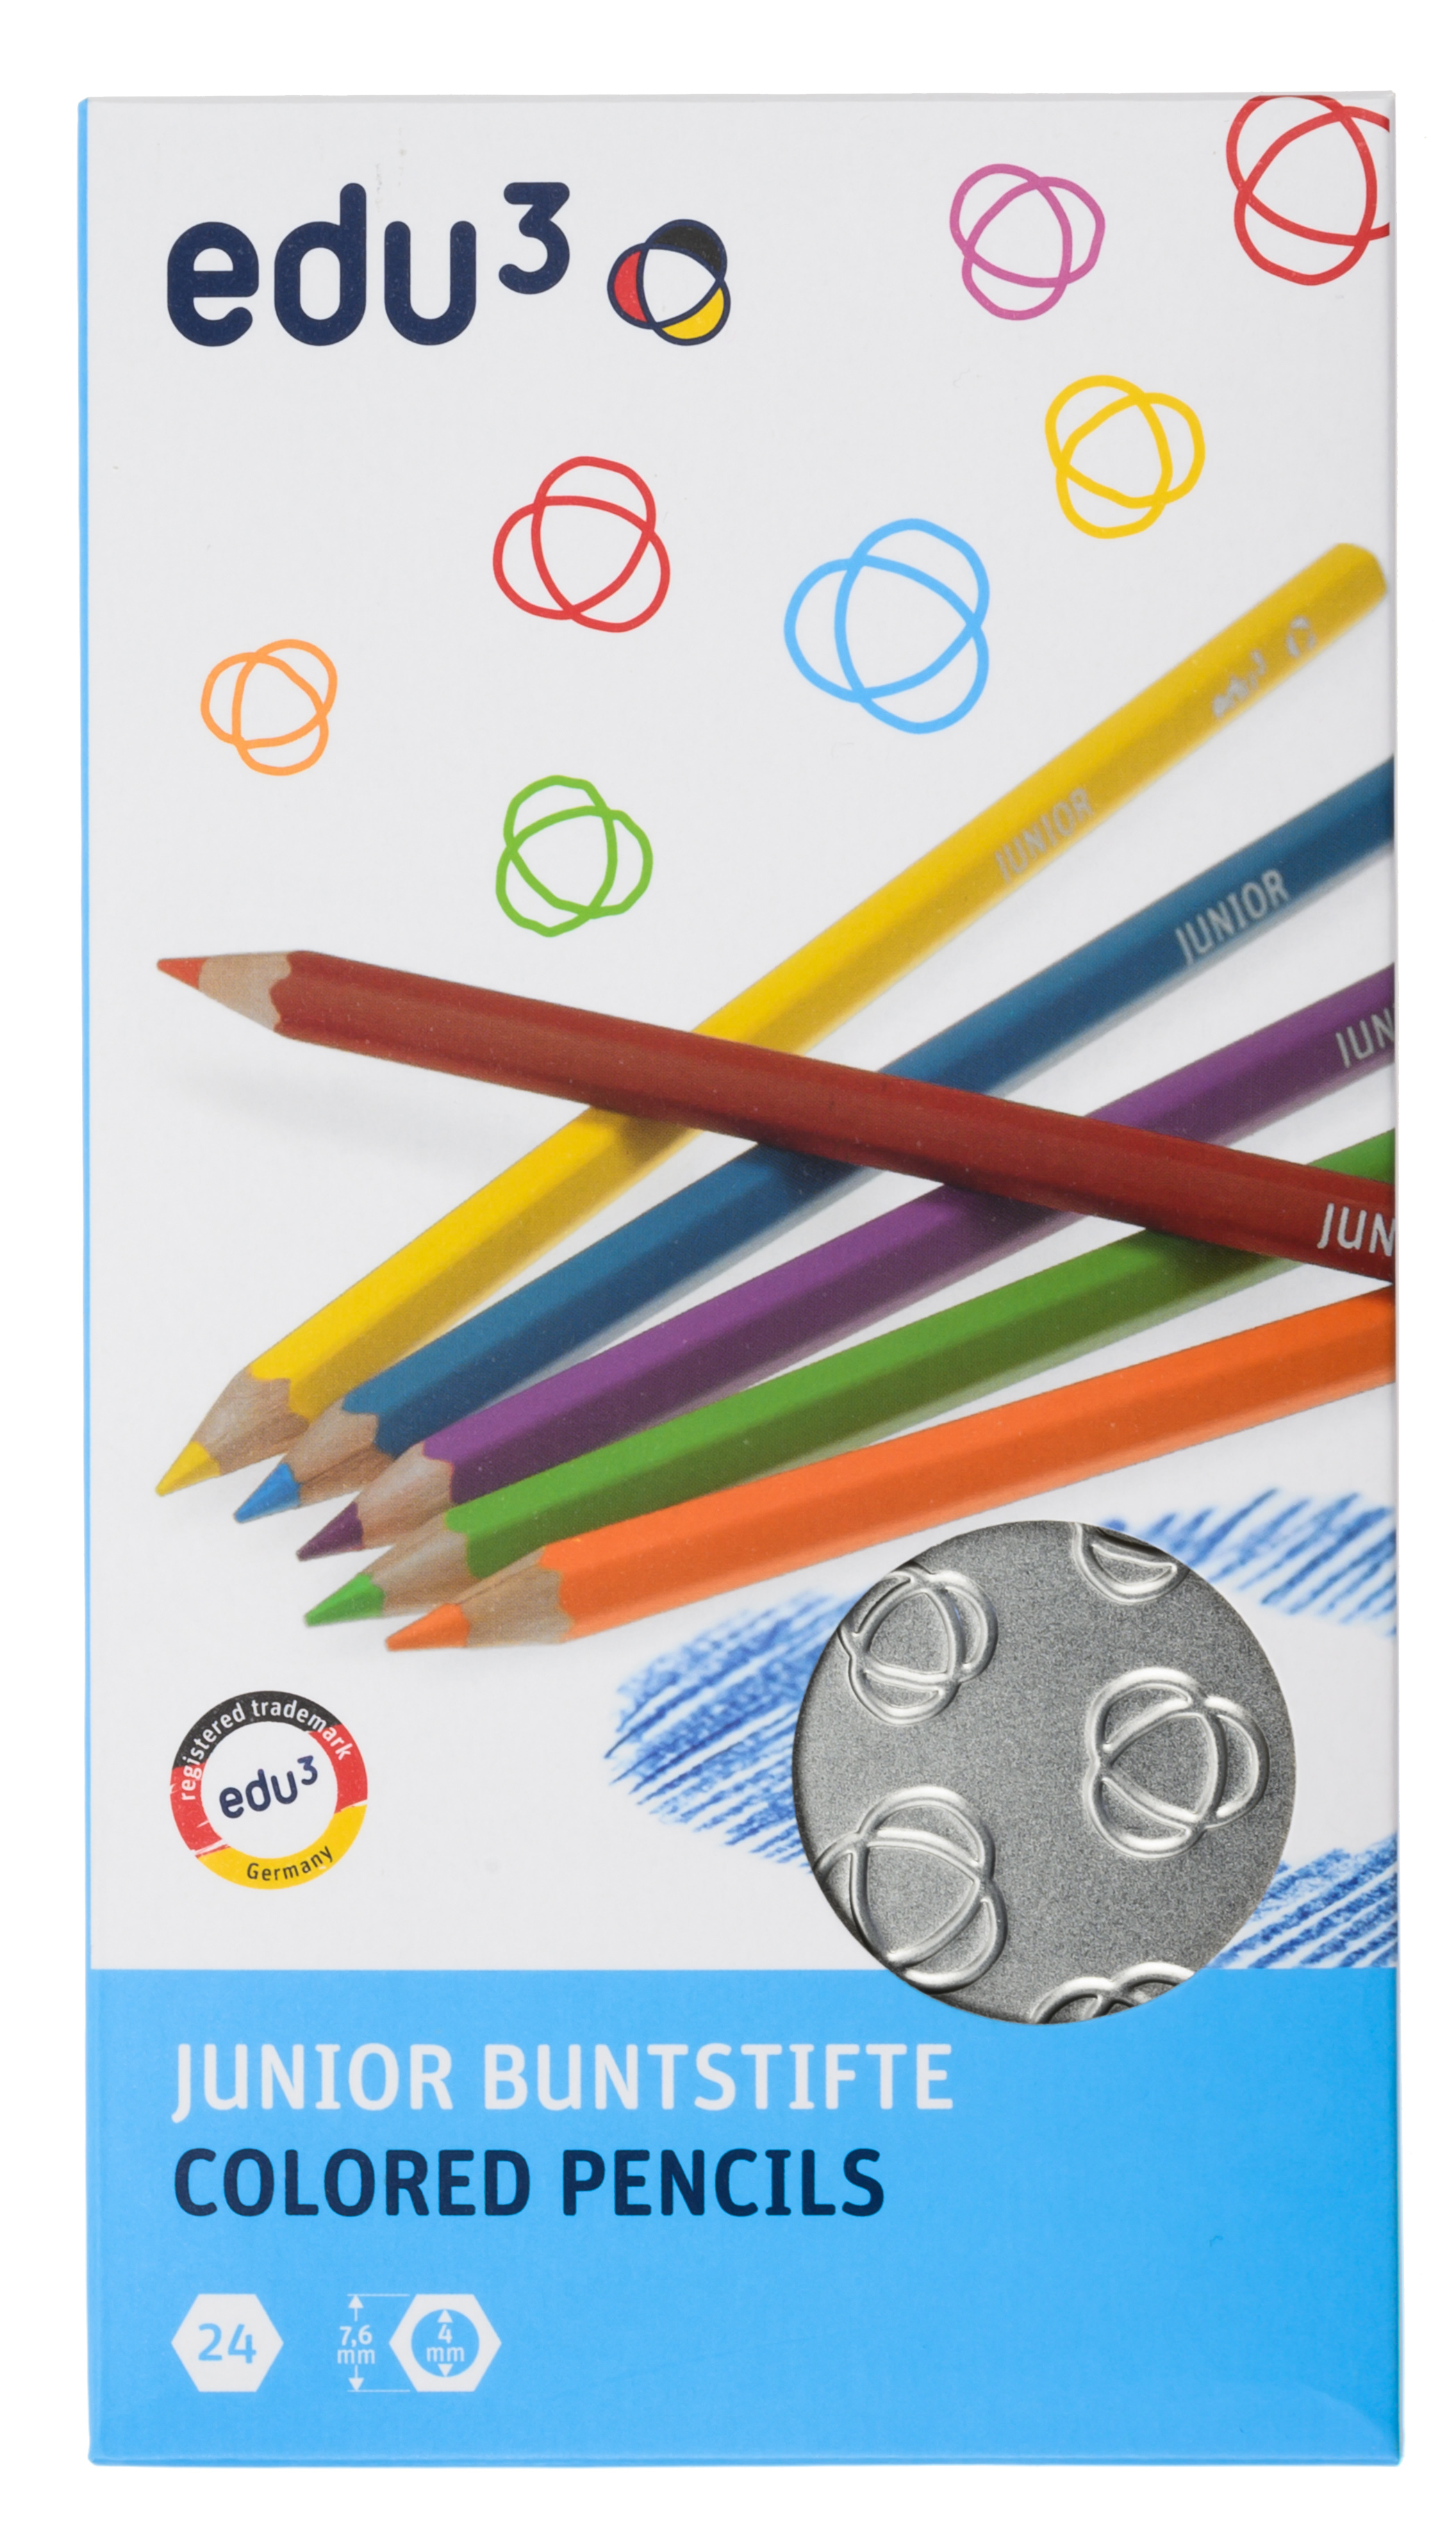 edu³ JUNIOR colored pencils hex tin box